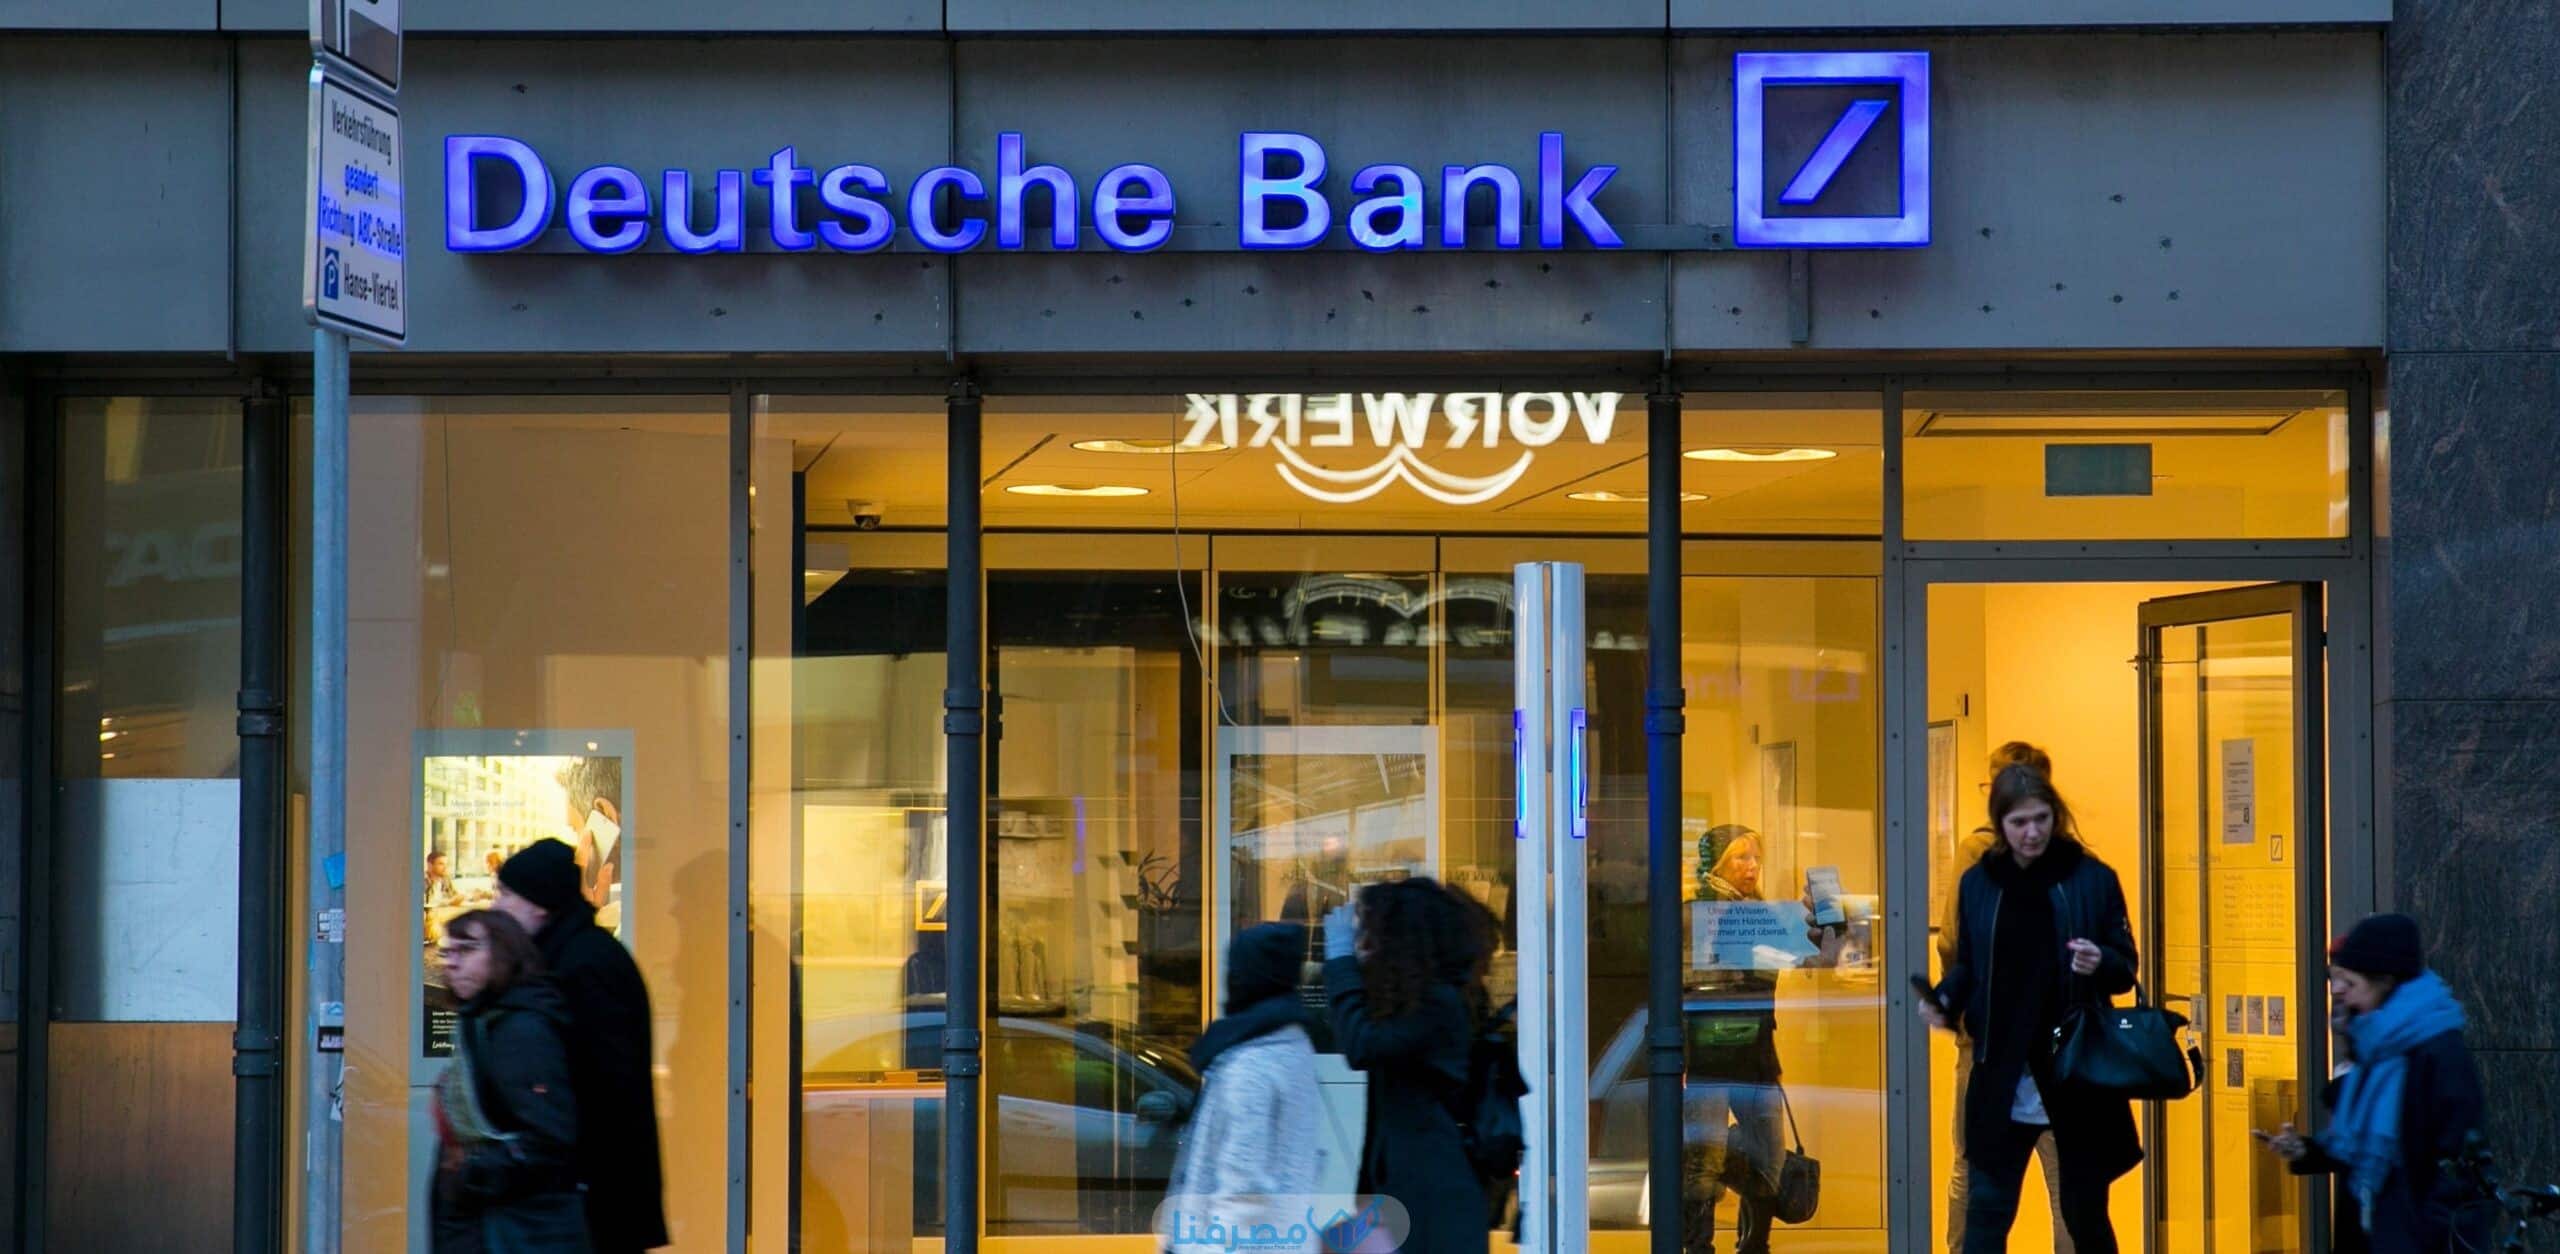 أهم المعلومات عن البنك الألماني السعودي في السعودية